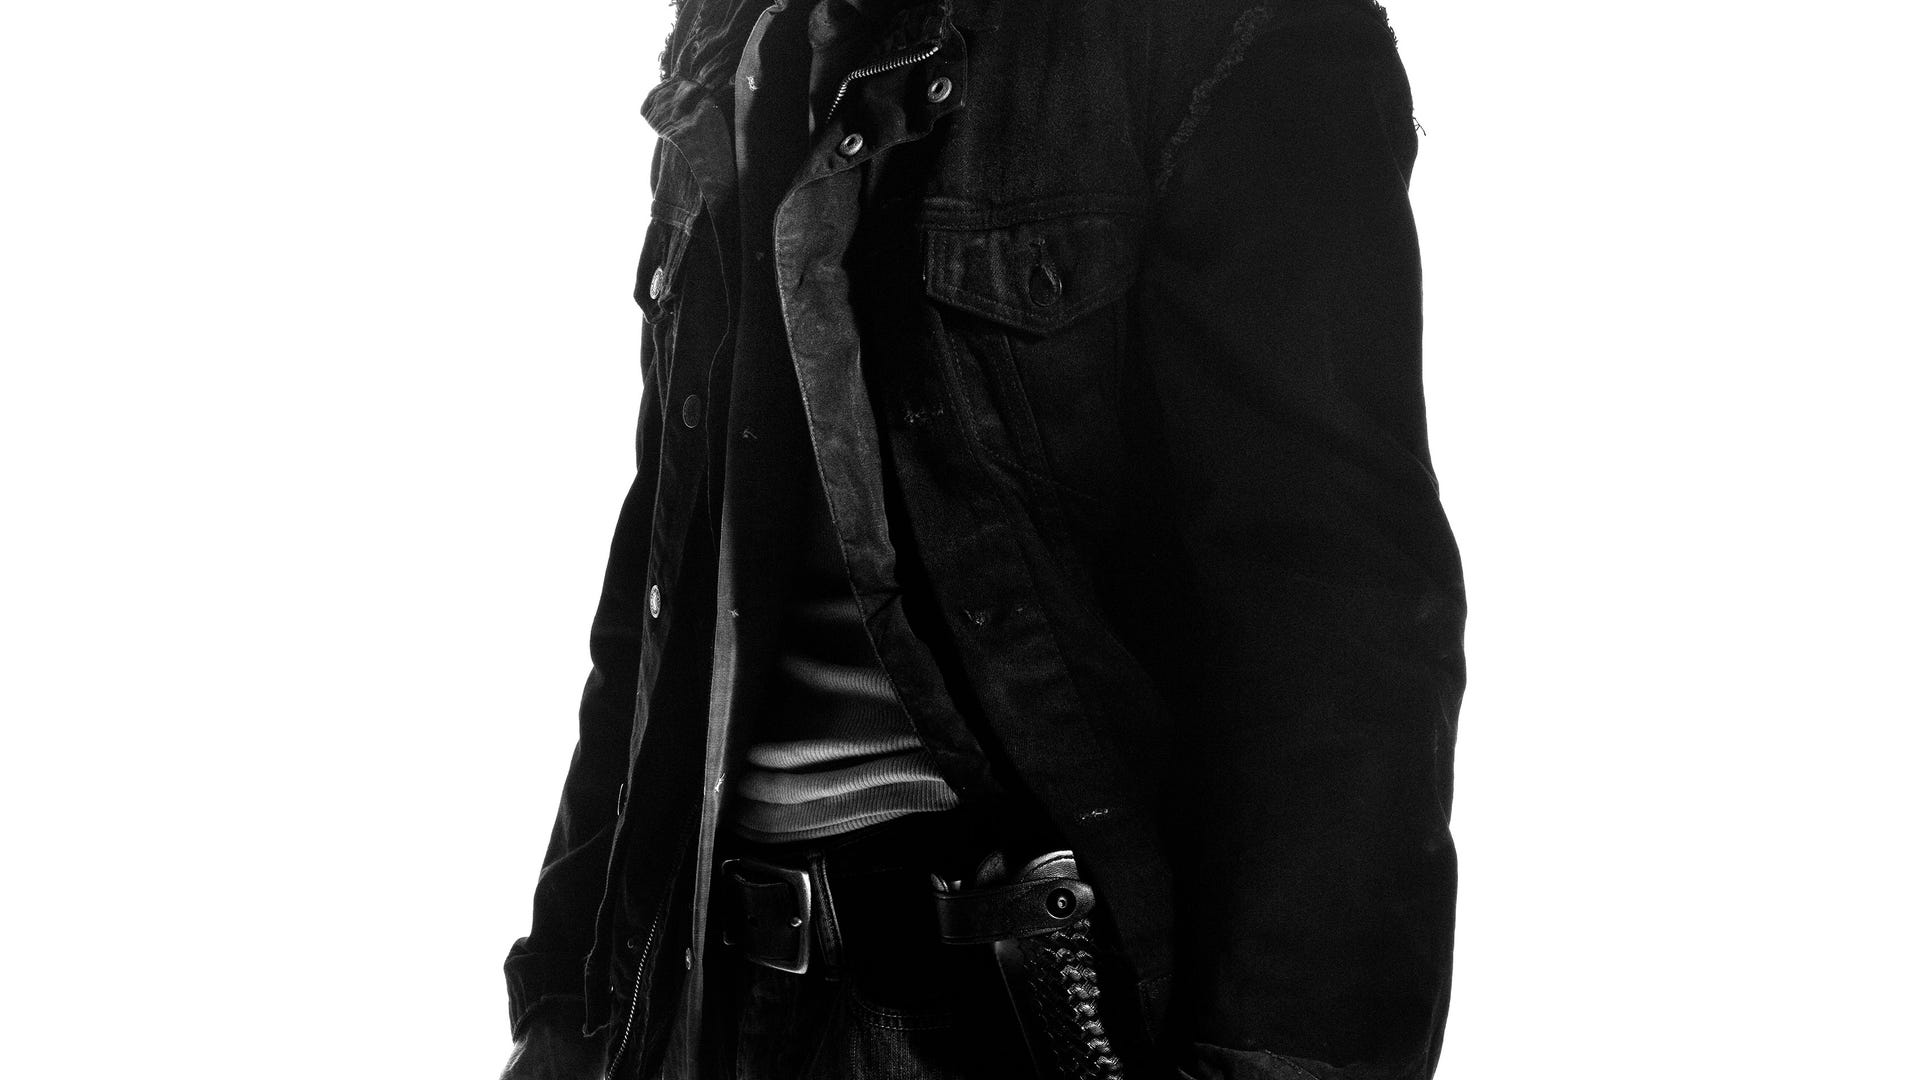 ​Austin Amelio as Dwight - The Walking Dead, Season 7